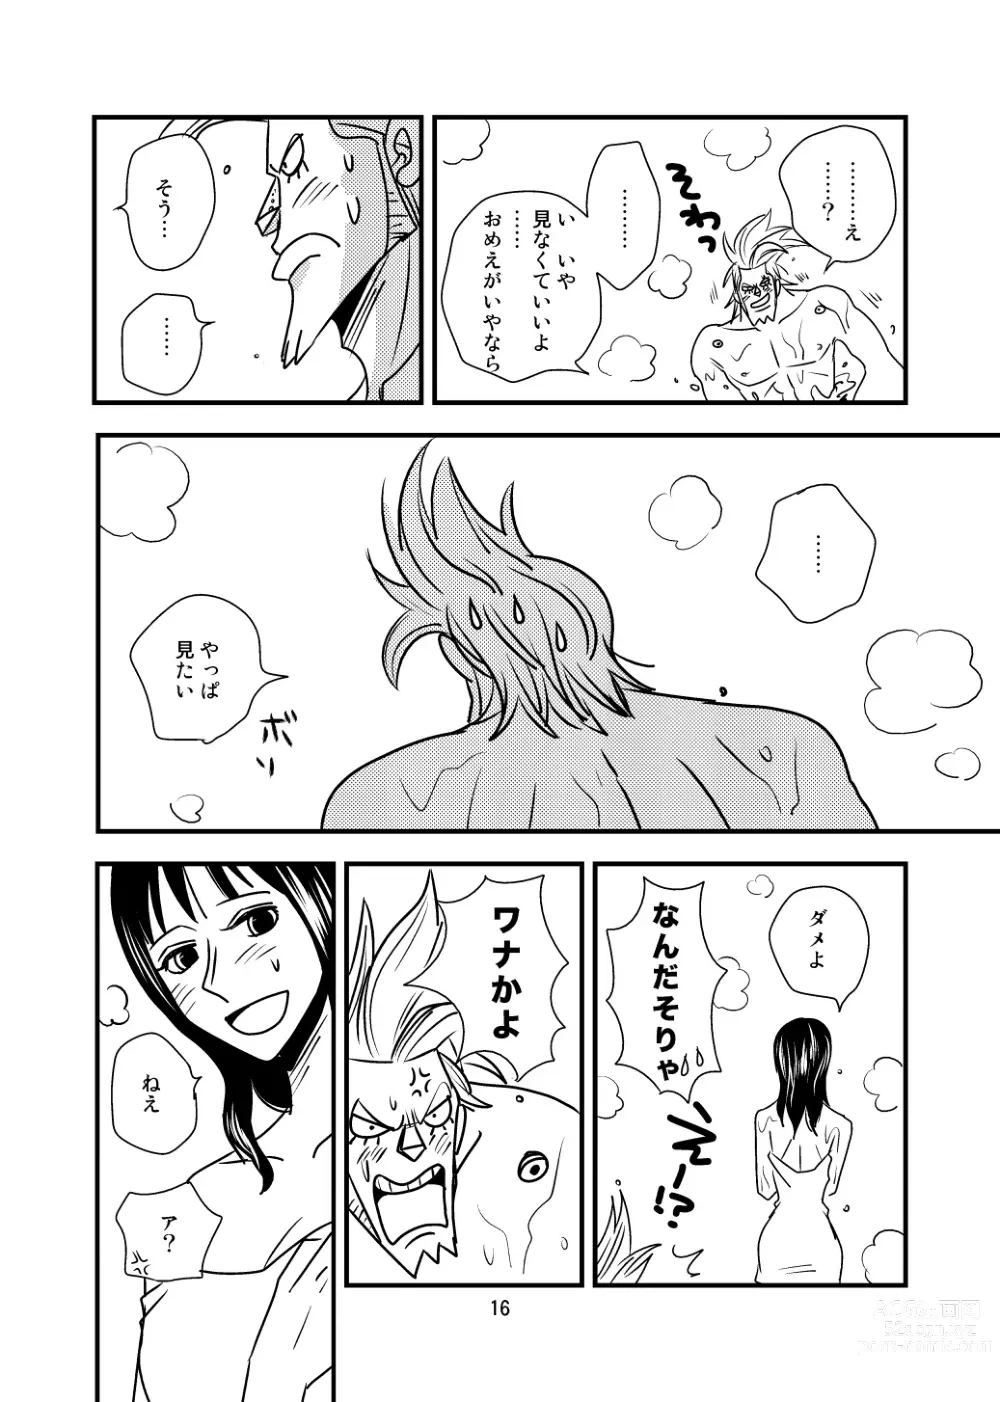 Page 14 of doujinshi Kura-Kura